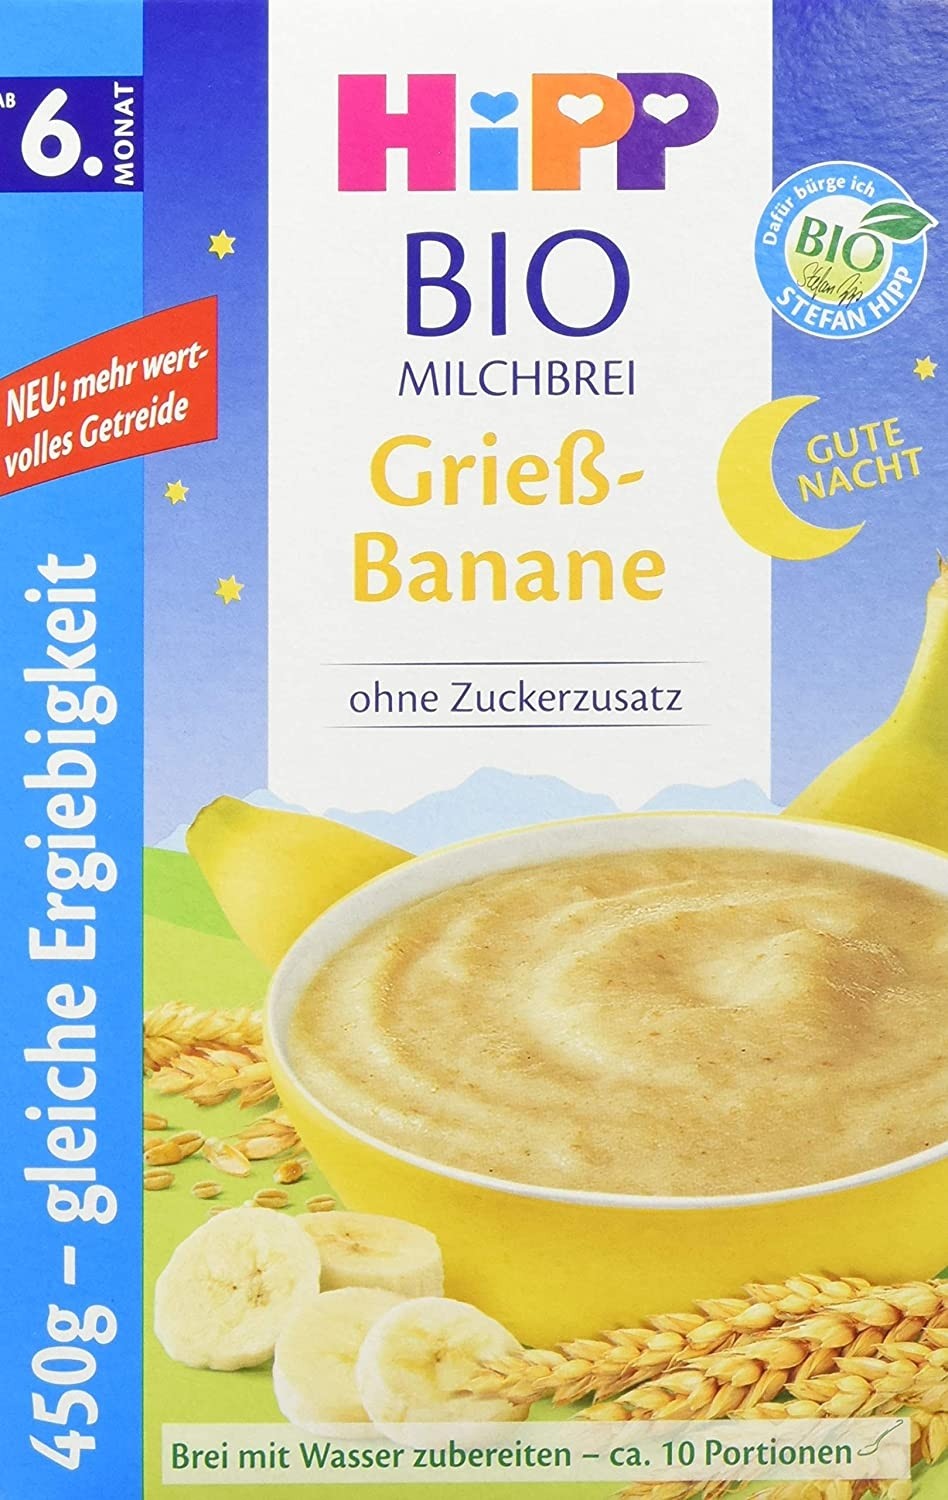 Image of Hipp BIO Milchbrei Grieß-Banane (450g)